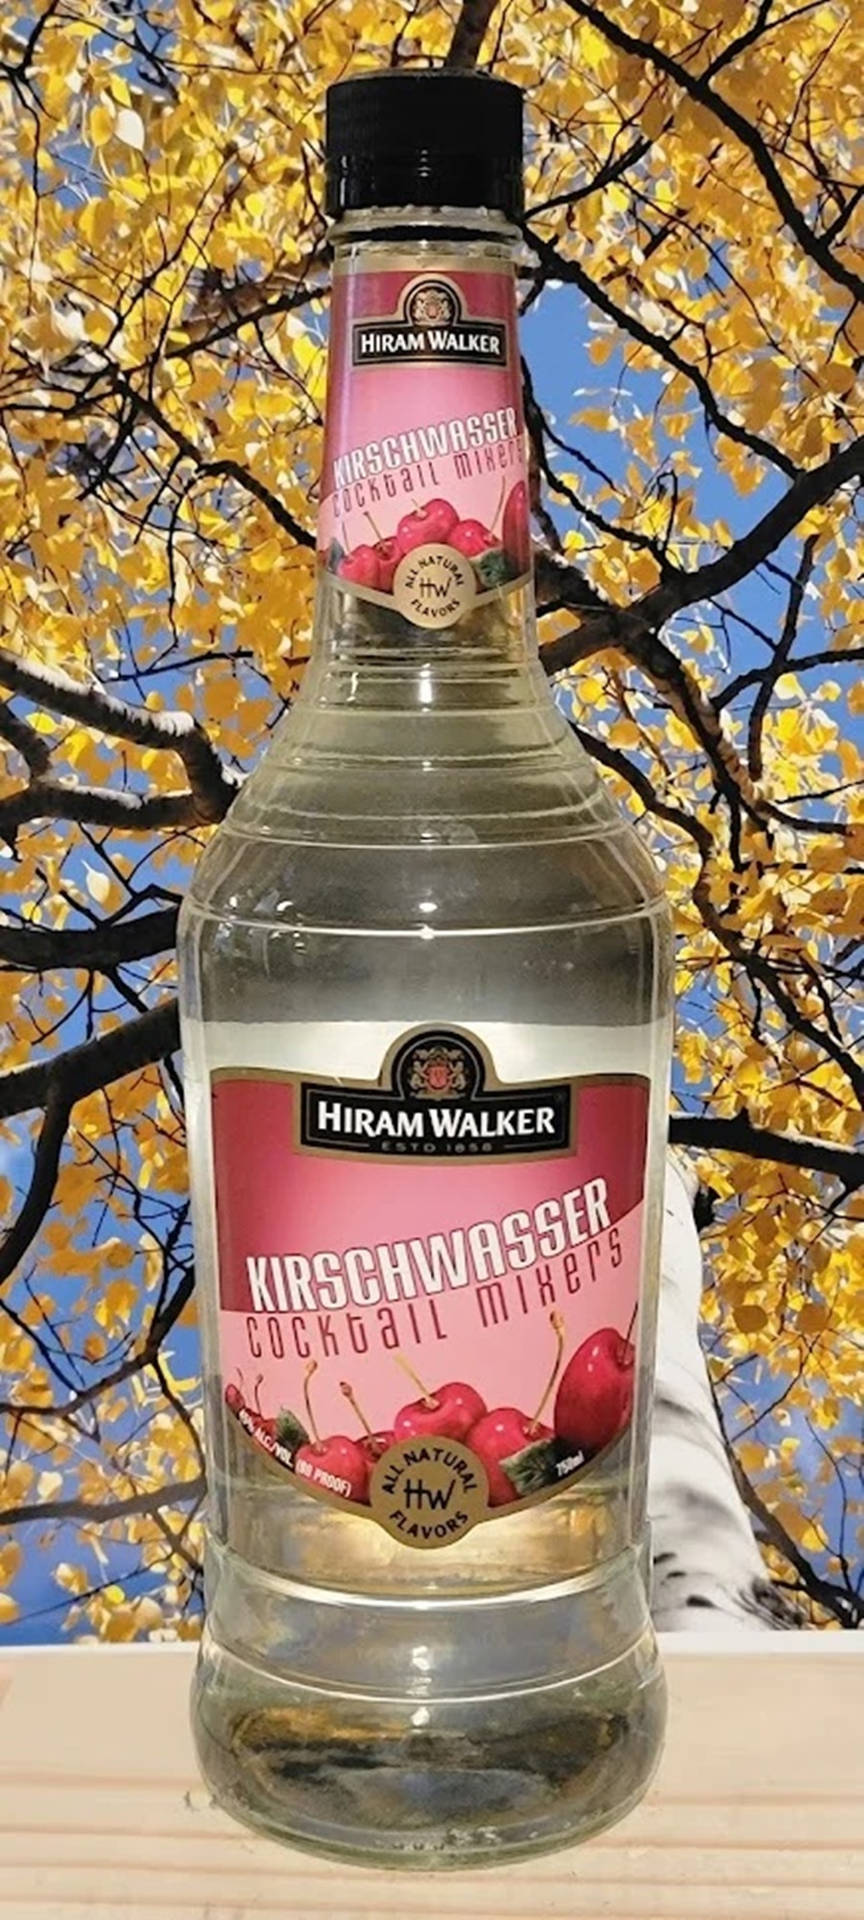 Hiram Walker Kirschwasser Cocktail Mixers Photography Wallpaper